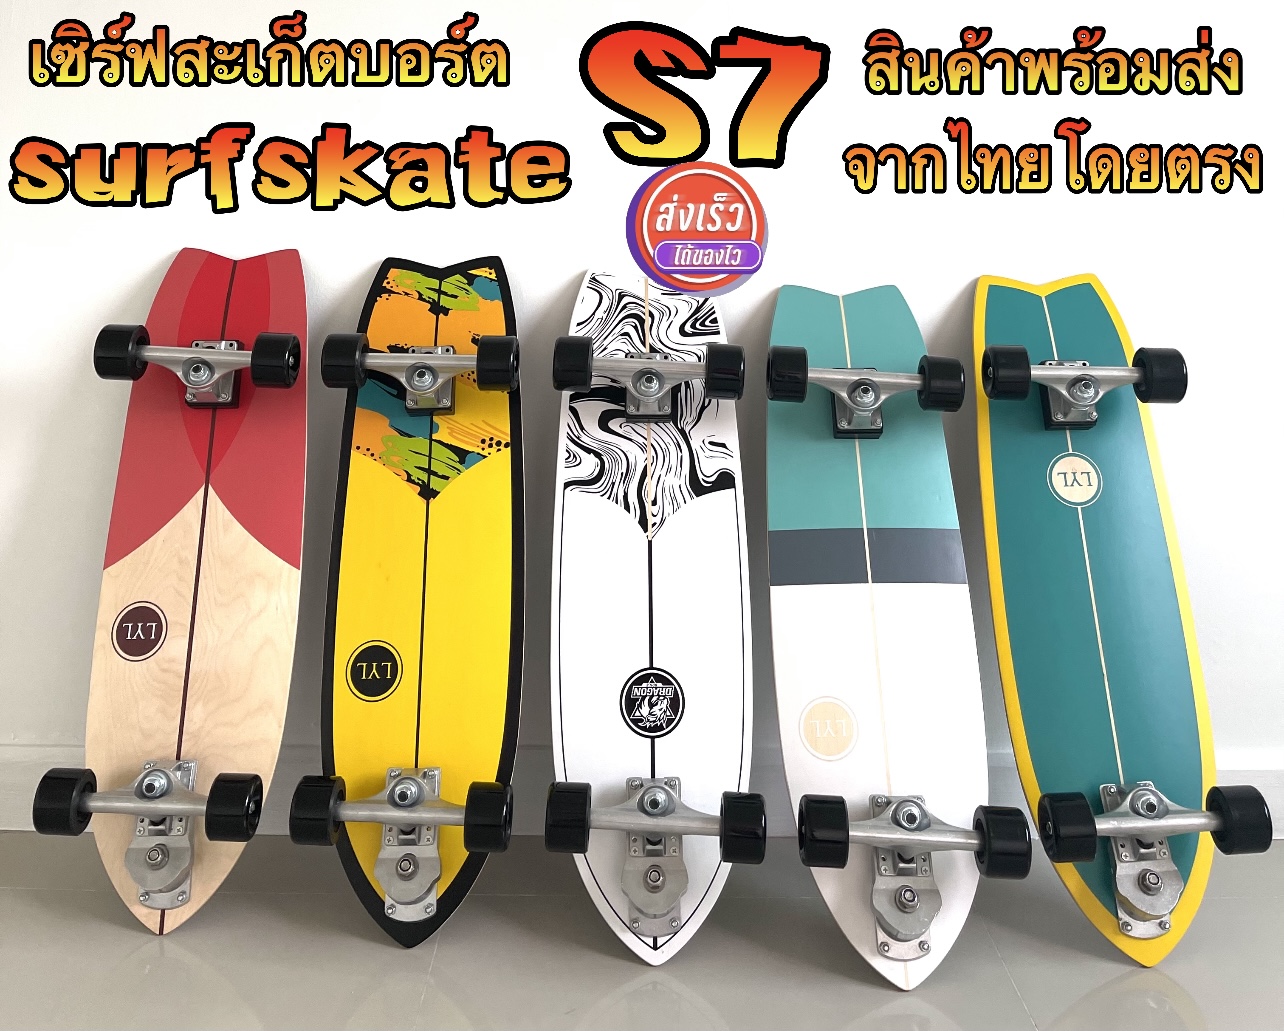 เซิร์ฟสะเก็ต แท้ surfskate S7 P7 แท้ 100% ขนาด 32 นิ้ว รุ่นใหม่ล่าสุด สินค้าพร้อมส่งจากไทยโดยตรง ส่งไวส่งเร็ว 2-3 ถึงมือแน่นอน